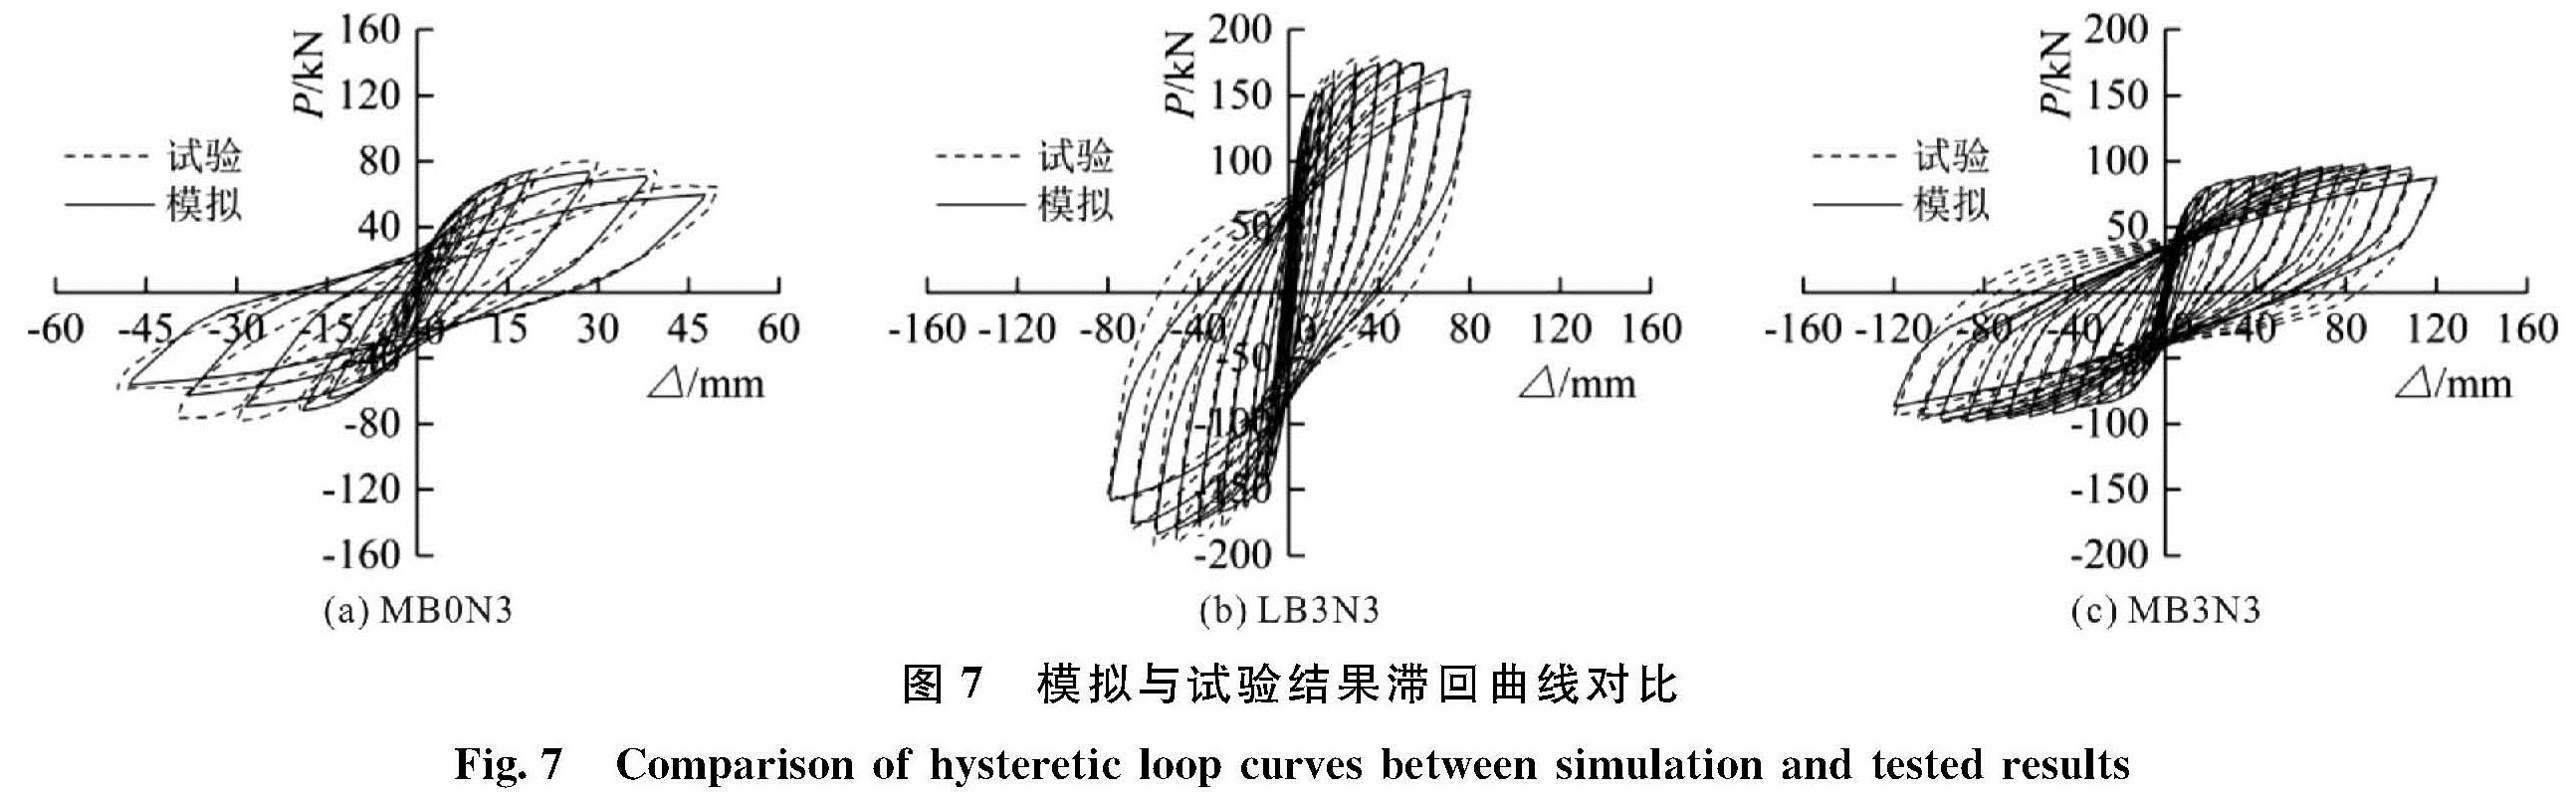 图7 模拟与试验结果滞回曲线对比<br/>Fig.7 Comparison of hysteretic loop curves between simulation and tested results